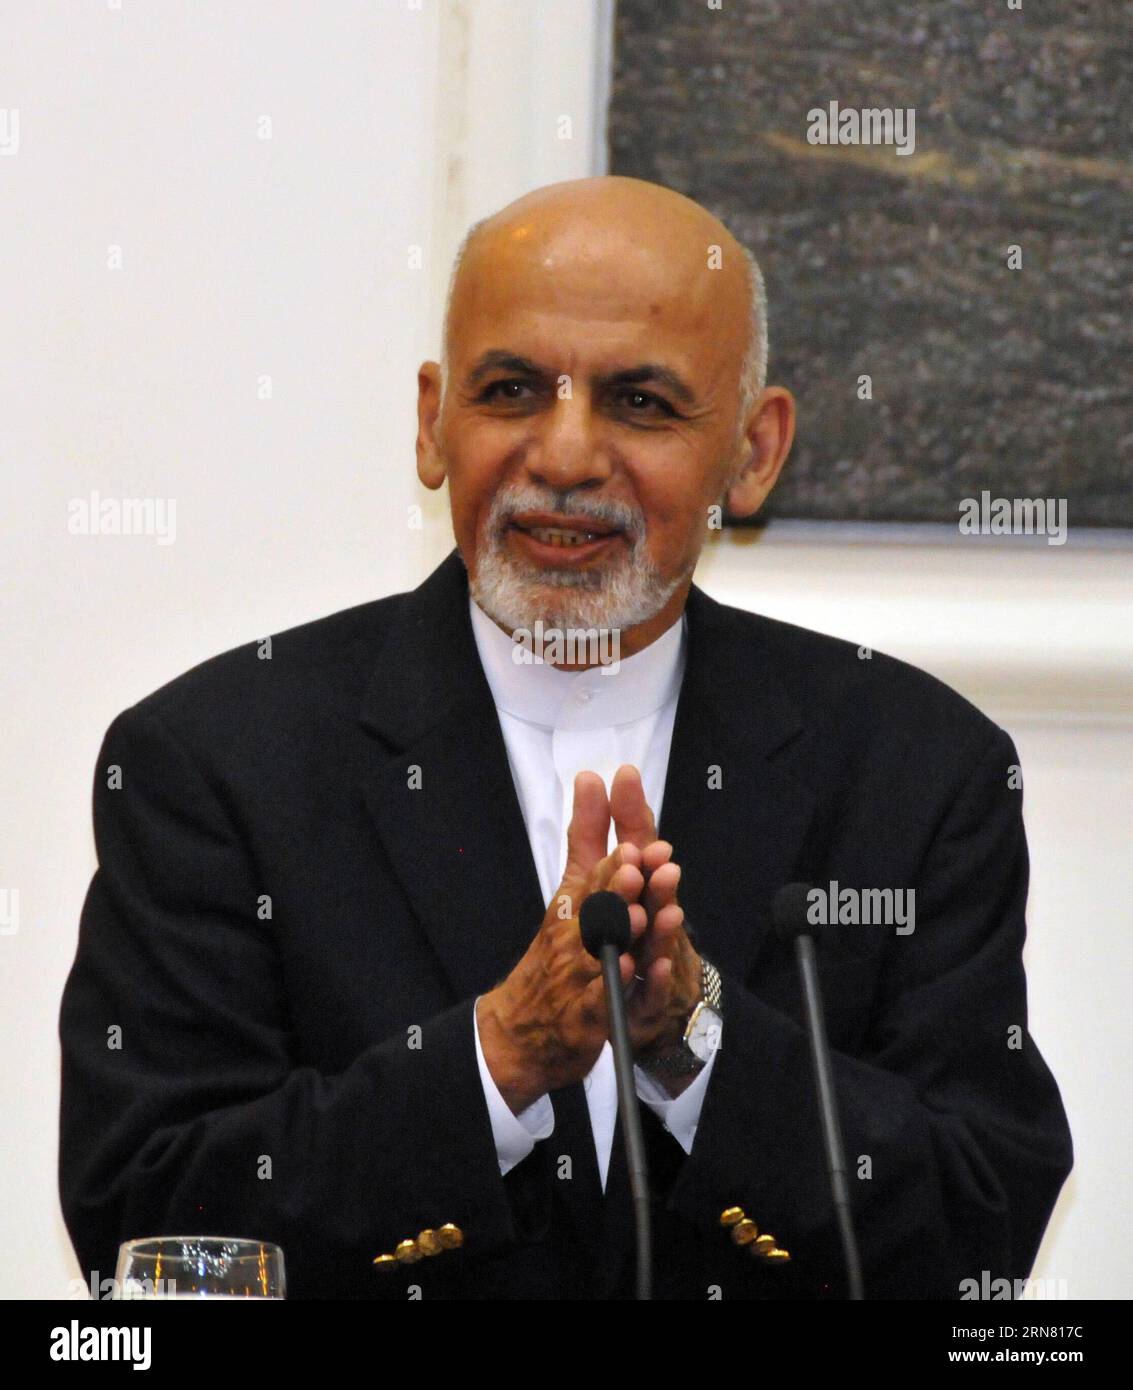 (150929) -- KABUL, 29. September 2015 -- der afghanische Präsident Mohammad Ashraf Ghani spricht während einer Pressekonferenz mit hochrangigen Sicherheitsbeamten in Kabul, Afghanistan, 29. September 2015. Mohammad Ashraf Ghani beschuldigte am Dienstag Taliban-Militanten, Zivilisten als menschlichen Schutz in der nördlichen Provinz Kunduz eingesetzt zu haben. AFGHANISTAN-KABUL-PRESSEKONFERENZ Omid PUBLICATIONxNOTxINxCHN Kabul September 29 2015 der afghanische Präsident Mohammad Ashraf Ghani spricht während einer Pressekonferenz mit hochrangigen Sicherheitsbeamten in Kabul Afghanistan September 29 2015 Mohammad Ashraf Ghani beschuldigte Taliban-Militante des Einsatzes von Zivilisten Stockfoto